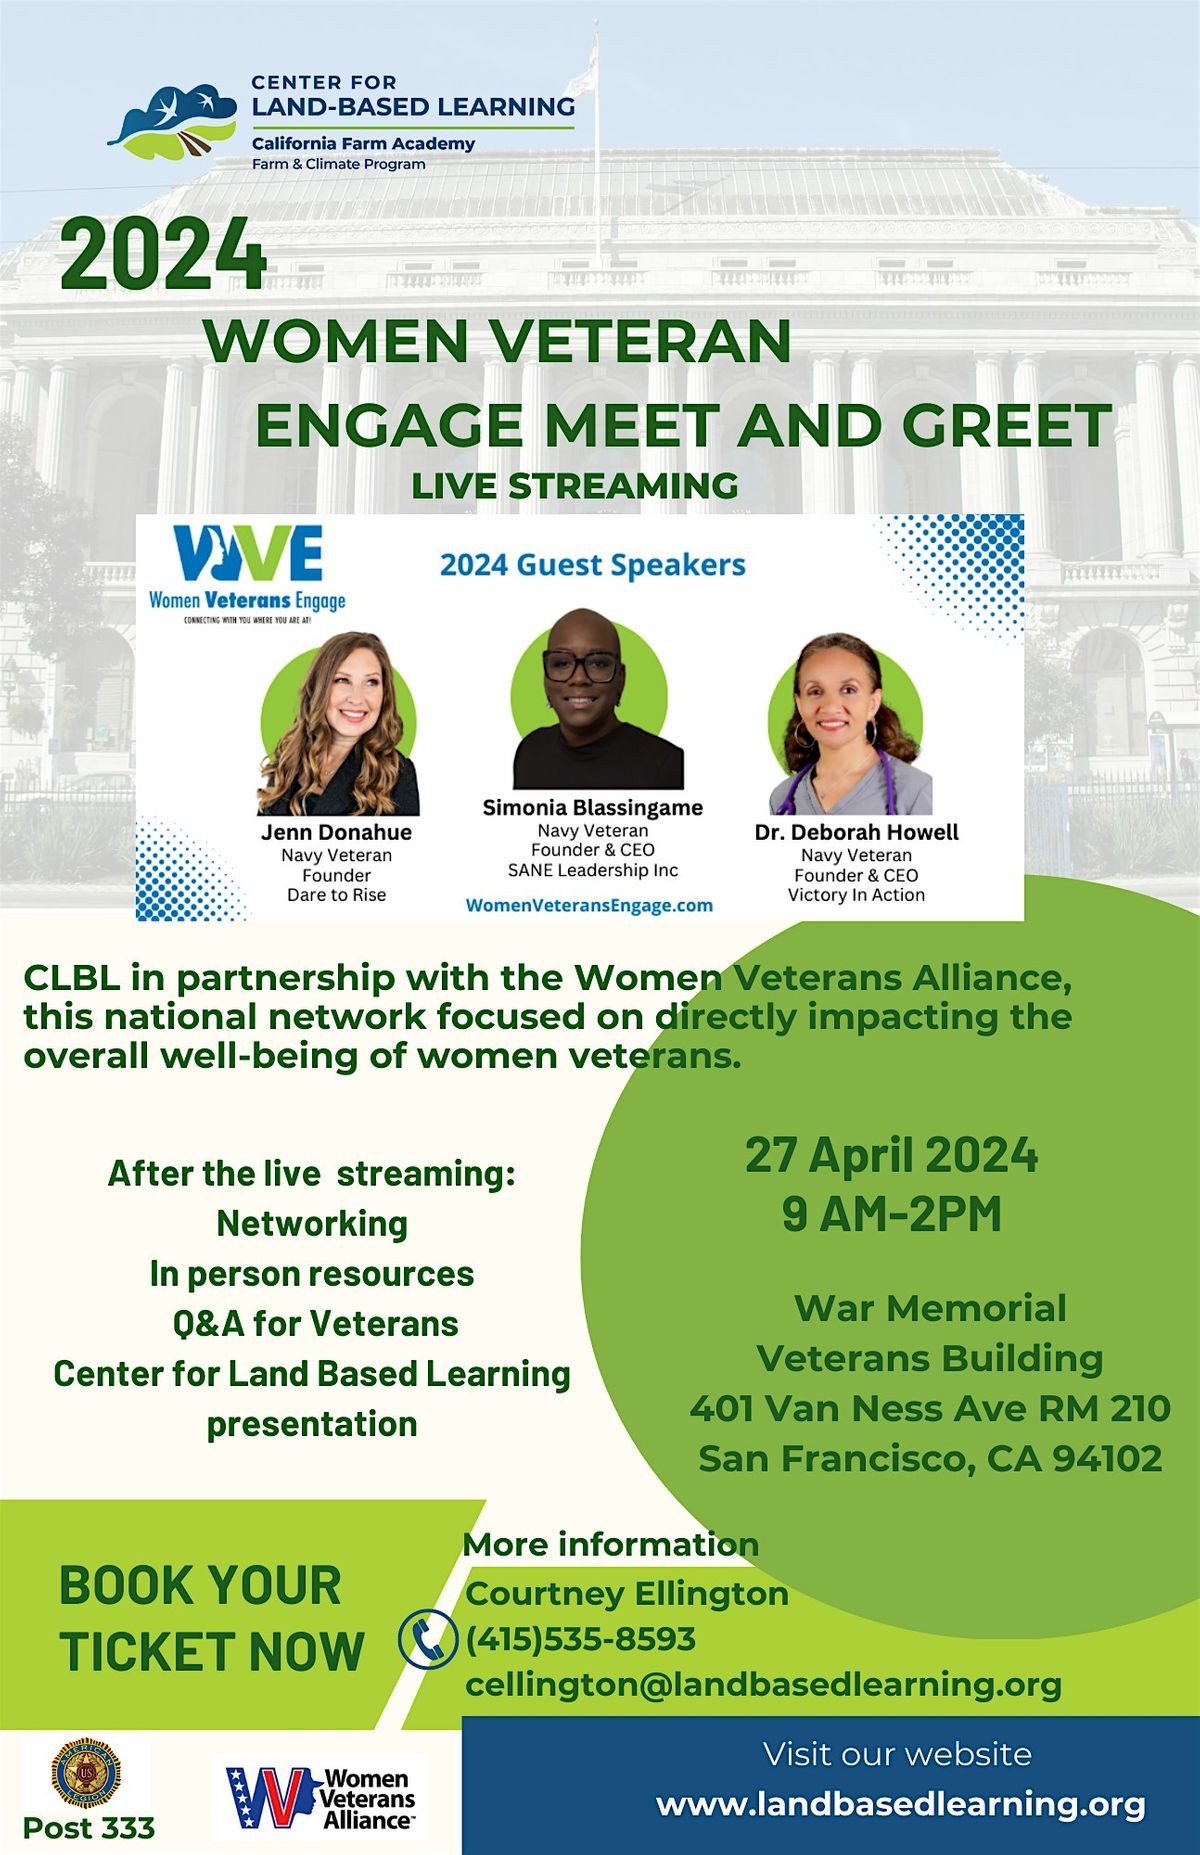 2024 Women Veteran Engage Meet and Greet